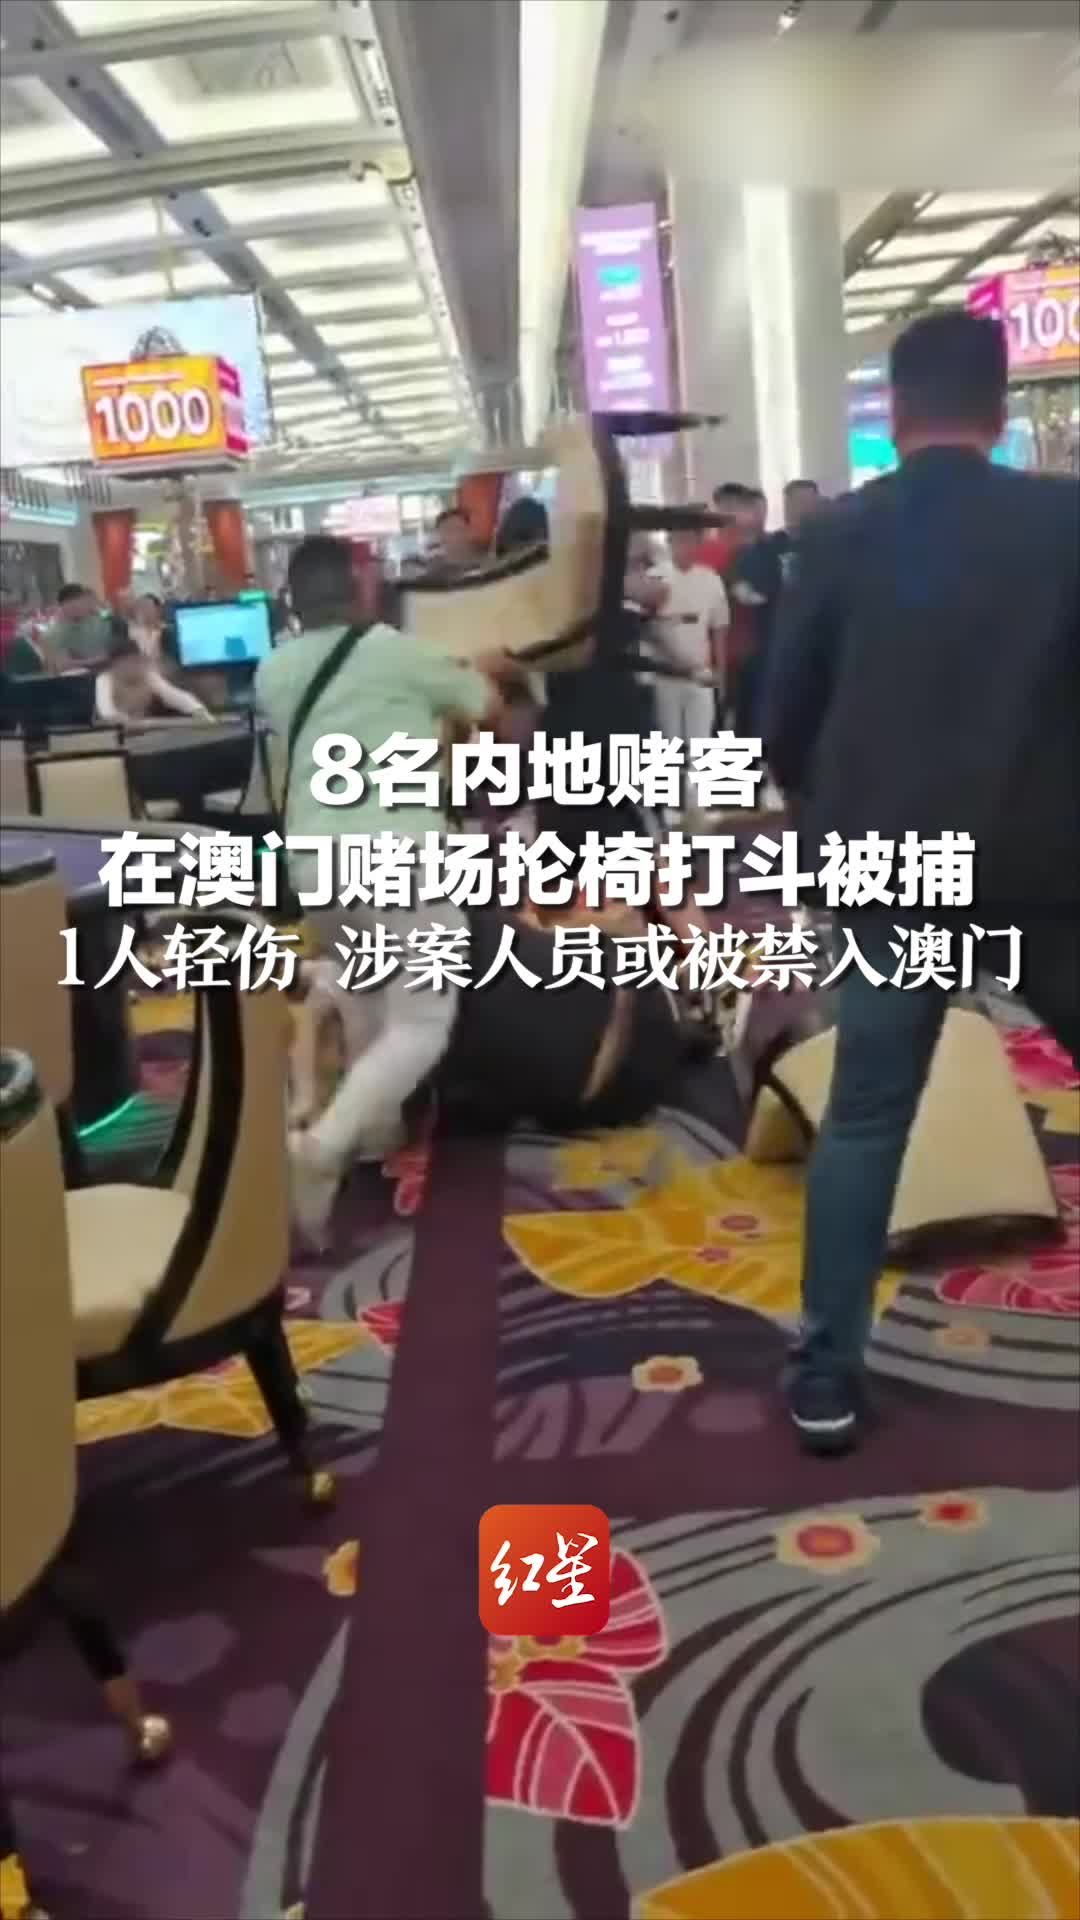 8名内地赌客在澳门赌场抡椅打斗被捕，1人轻伤 涉案人员或被禁入澳门